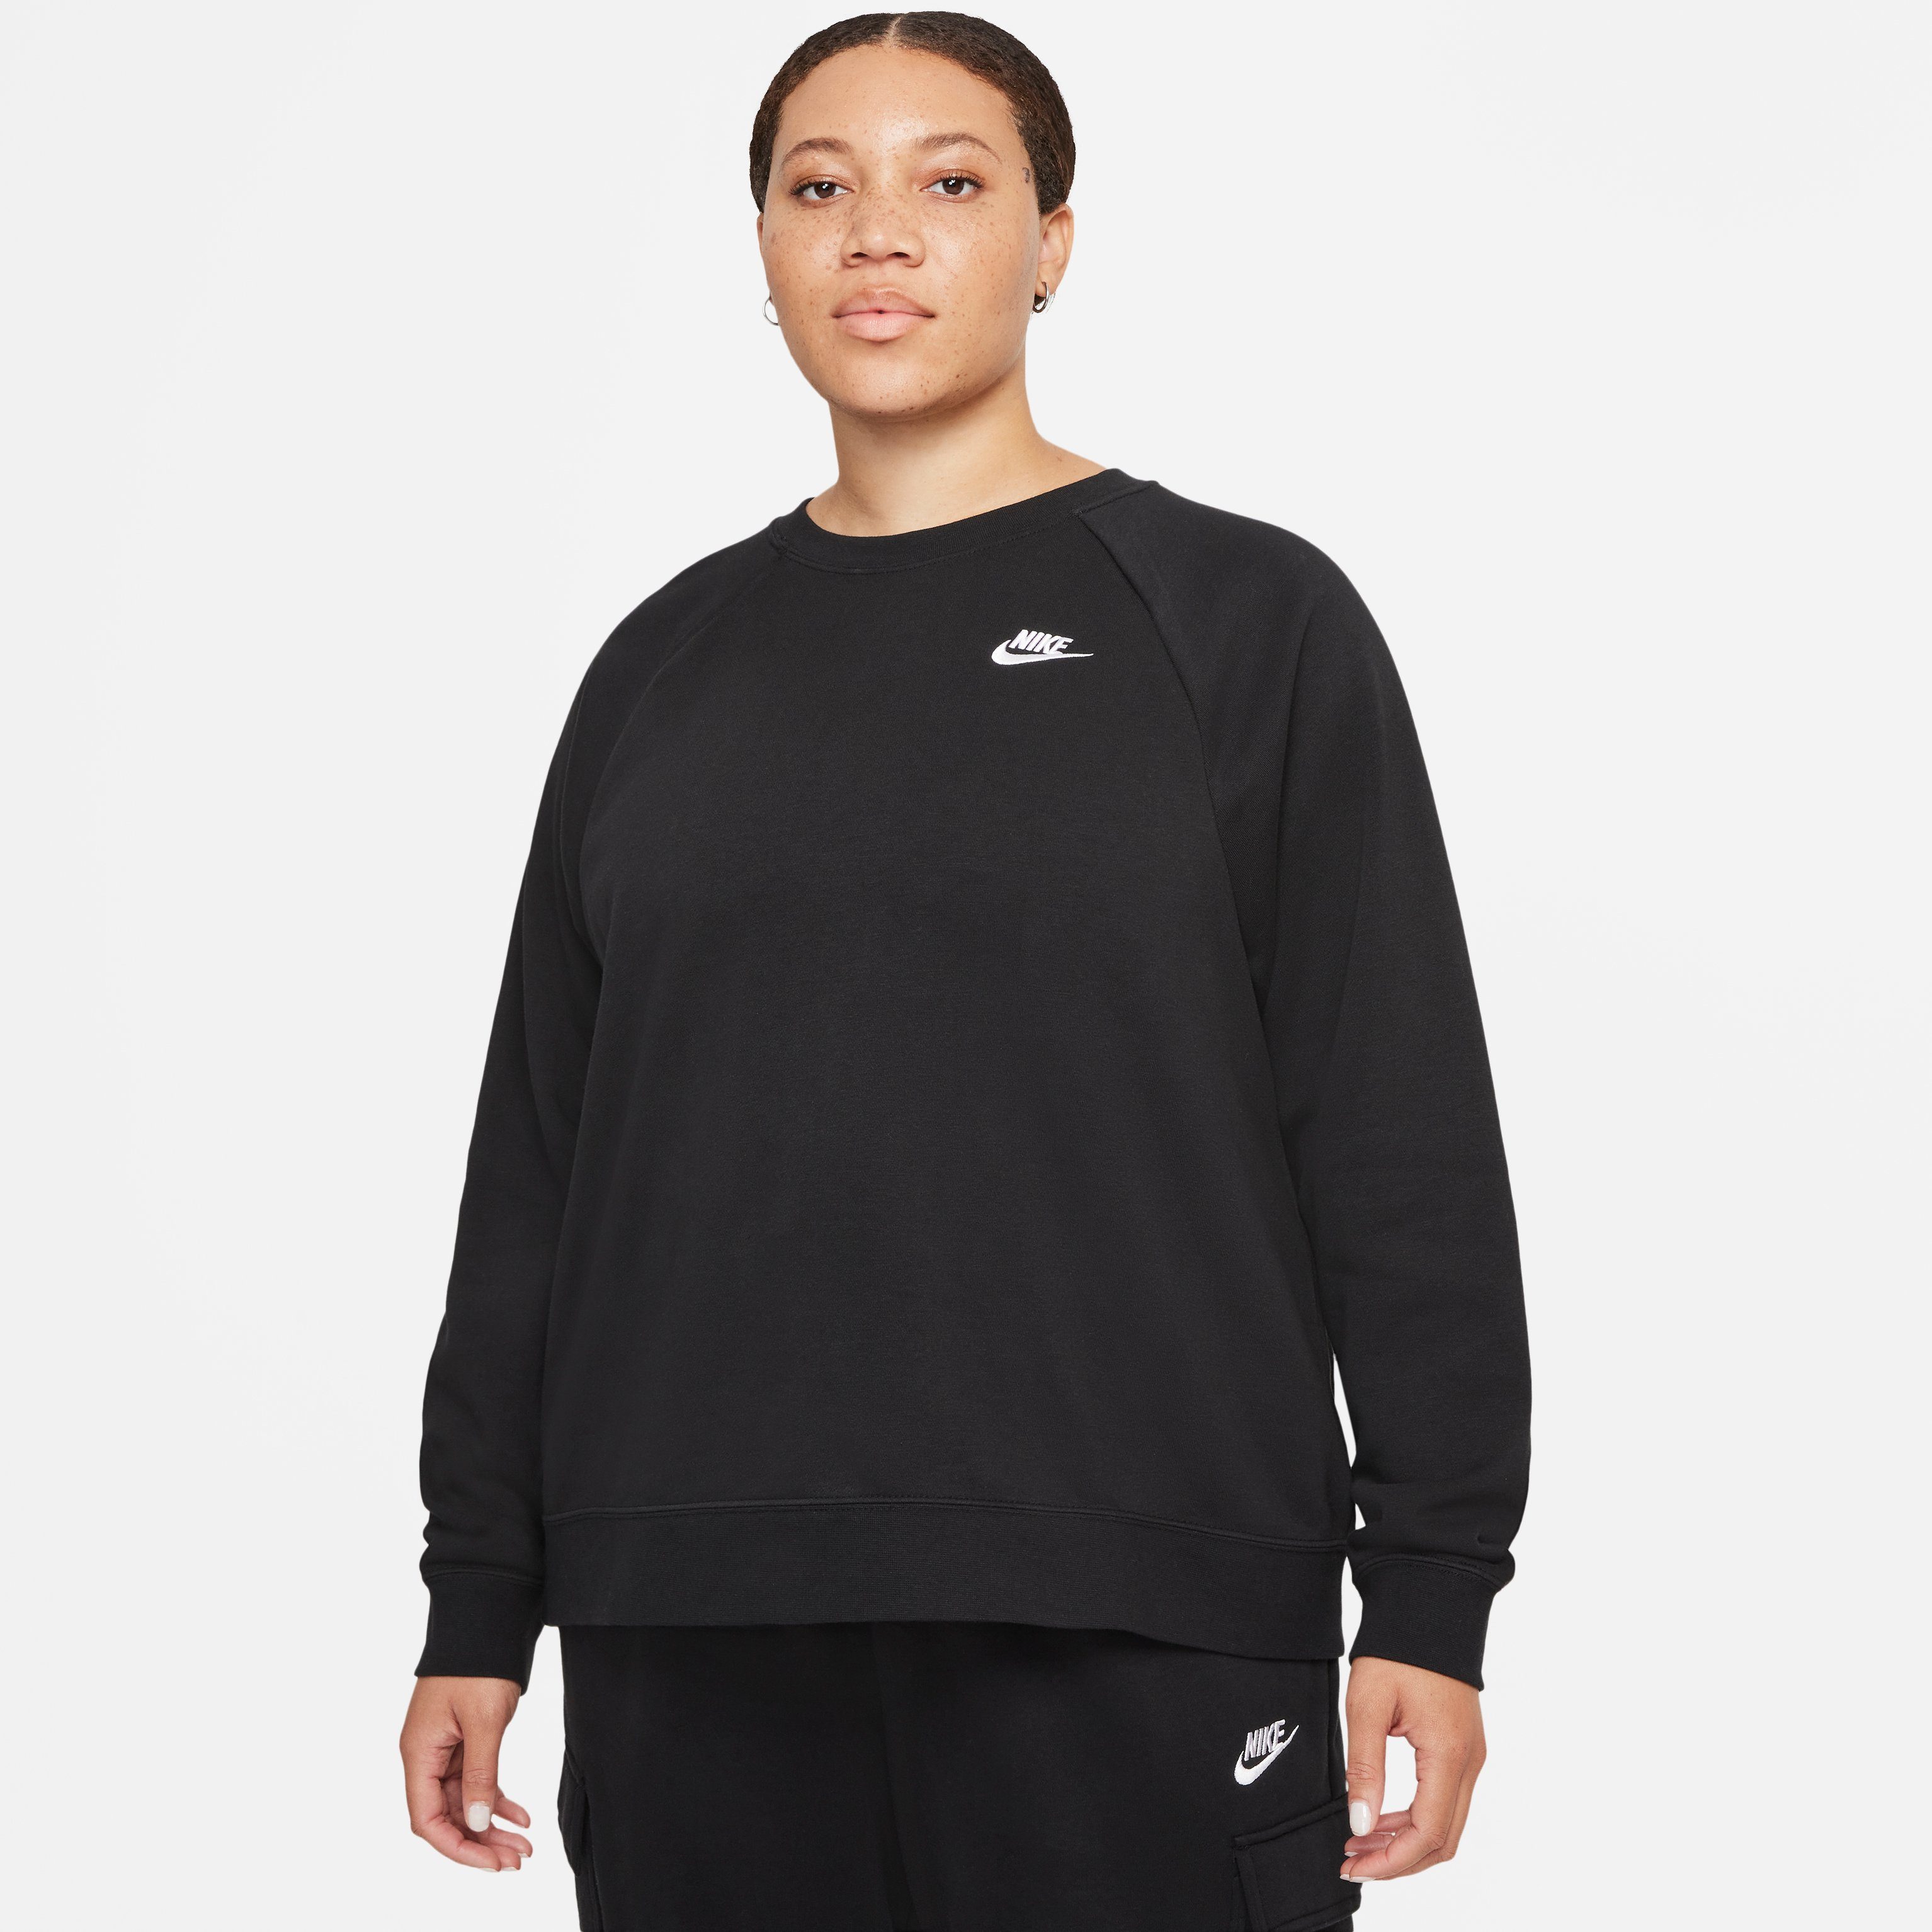 Sweatshirt ESSENTIAL WOMENS schwarz (PLUS Nike CREW Sportswear SIZE)